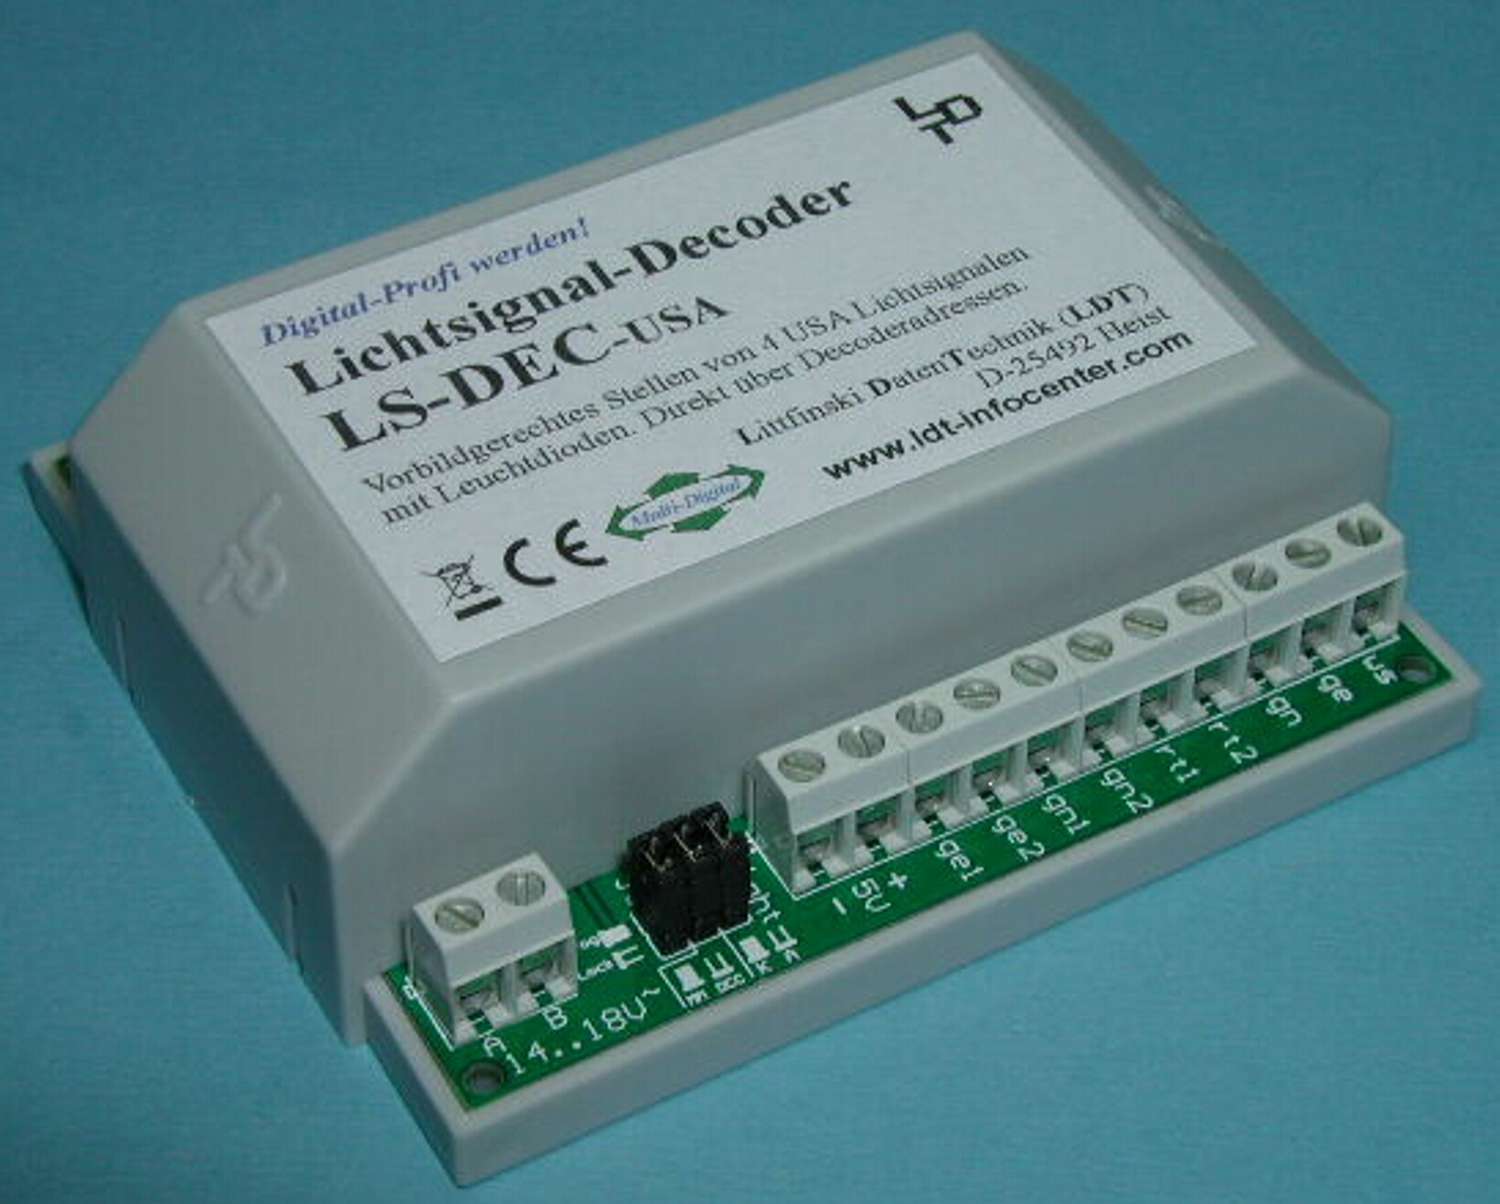 Littfinski 510612 - LS-DEC-USA-F - Lichtsignaldecoder, 4-fach, für USA-Signale, Fertigmodul